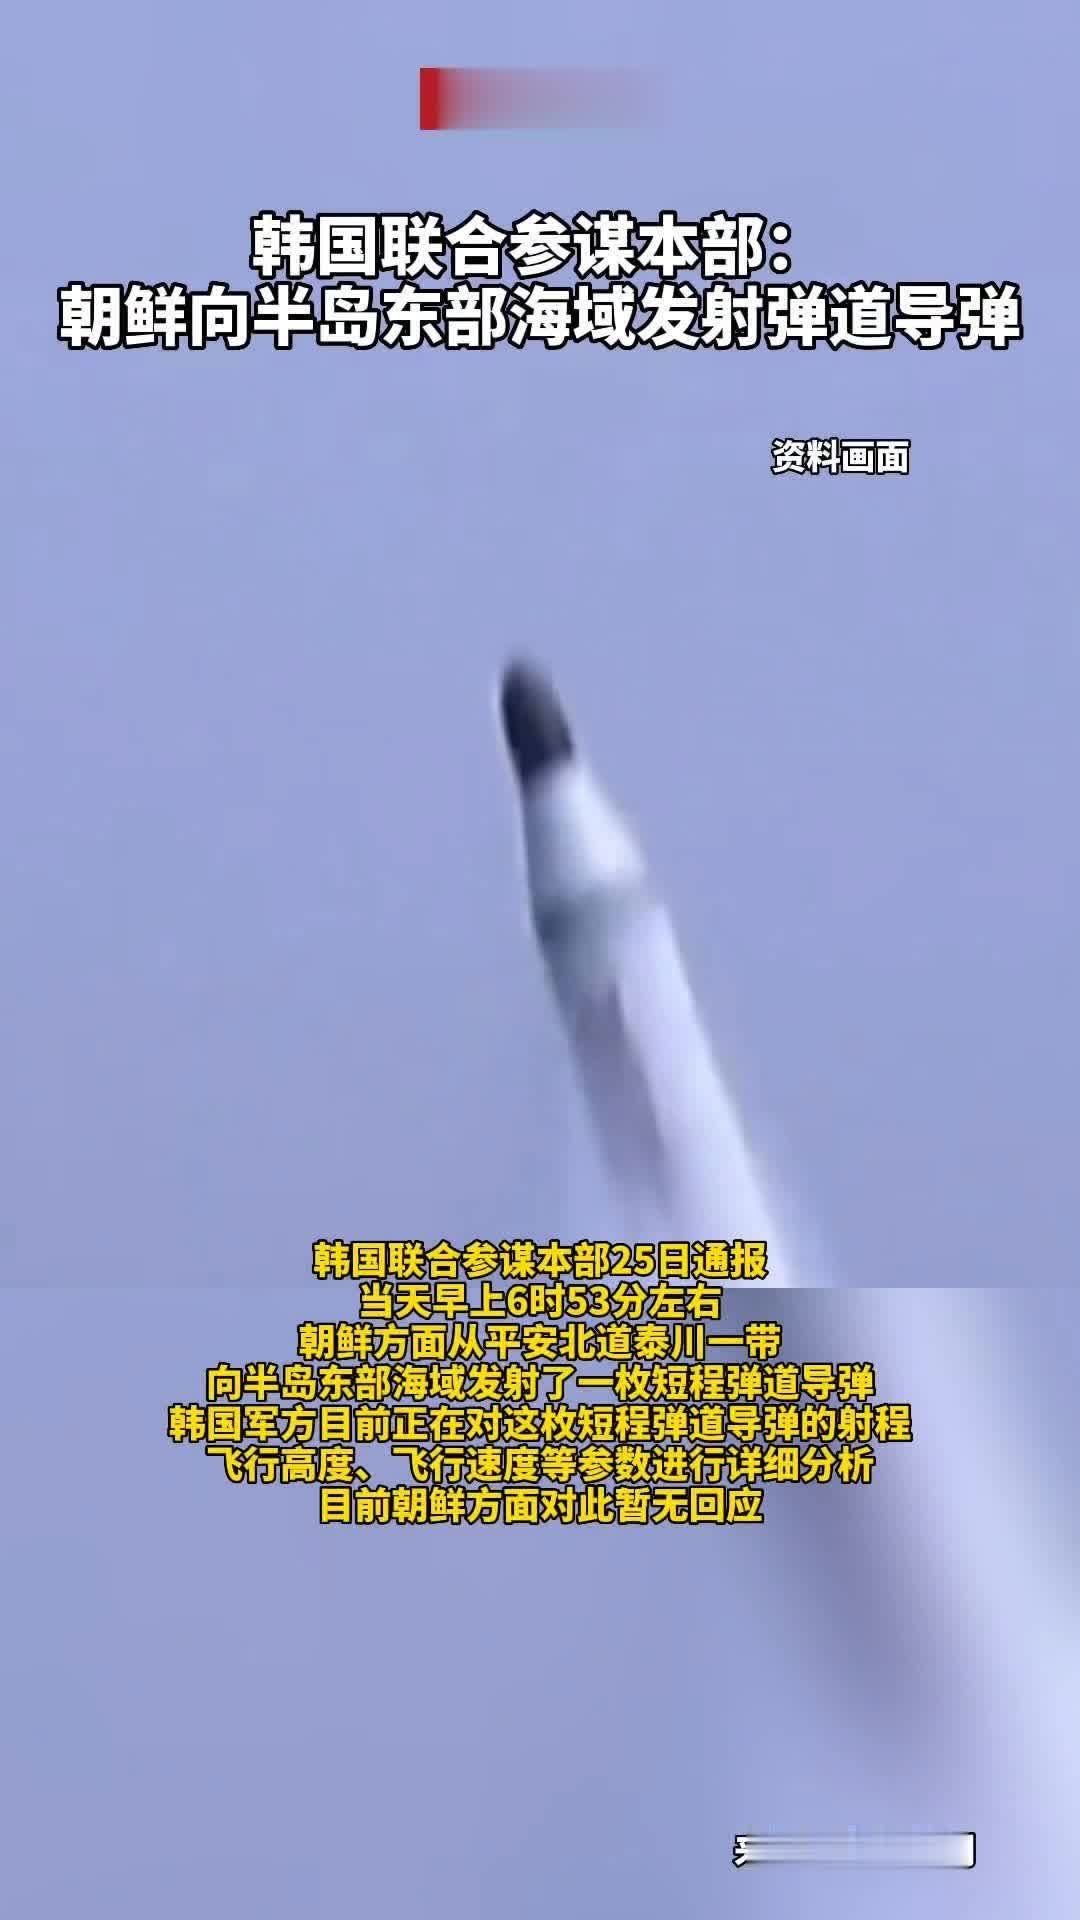 #韩国联合参谋本部：朝鲜向半岛东部海域发射弹道导弹